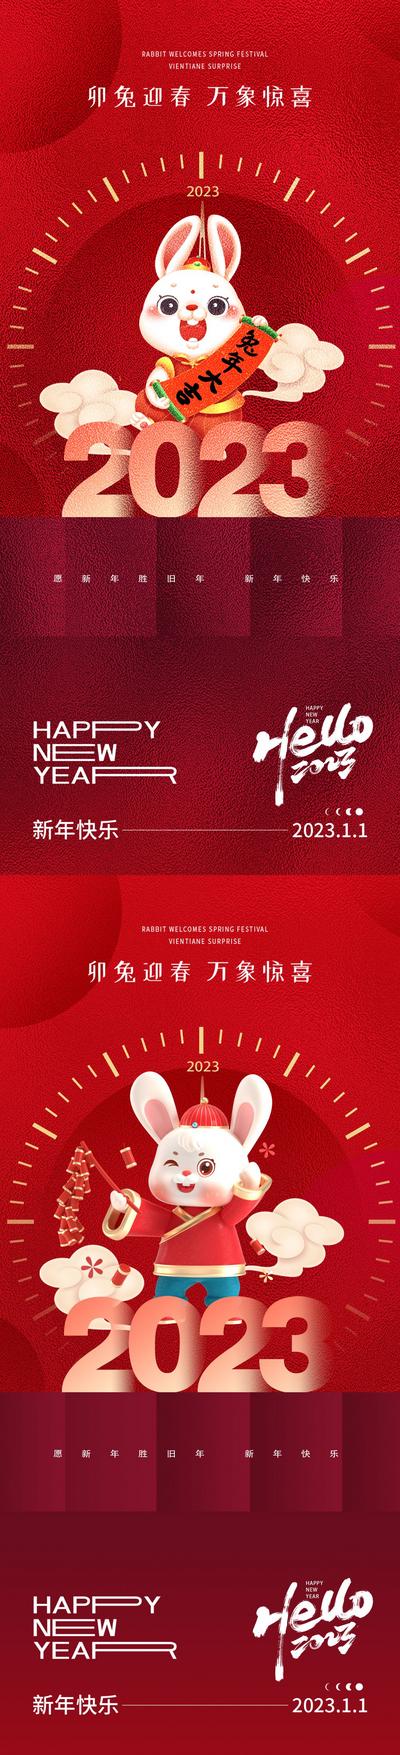 南门网 海报 公历节日 元旦节 兔年 新年 2023 兔子